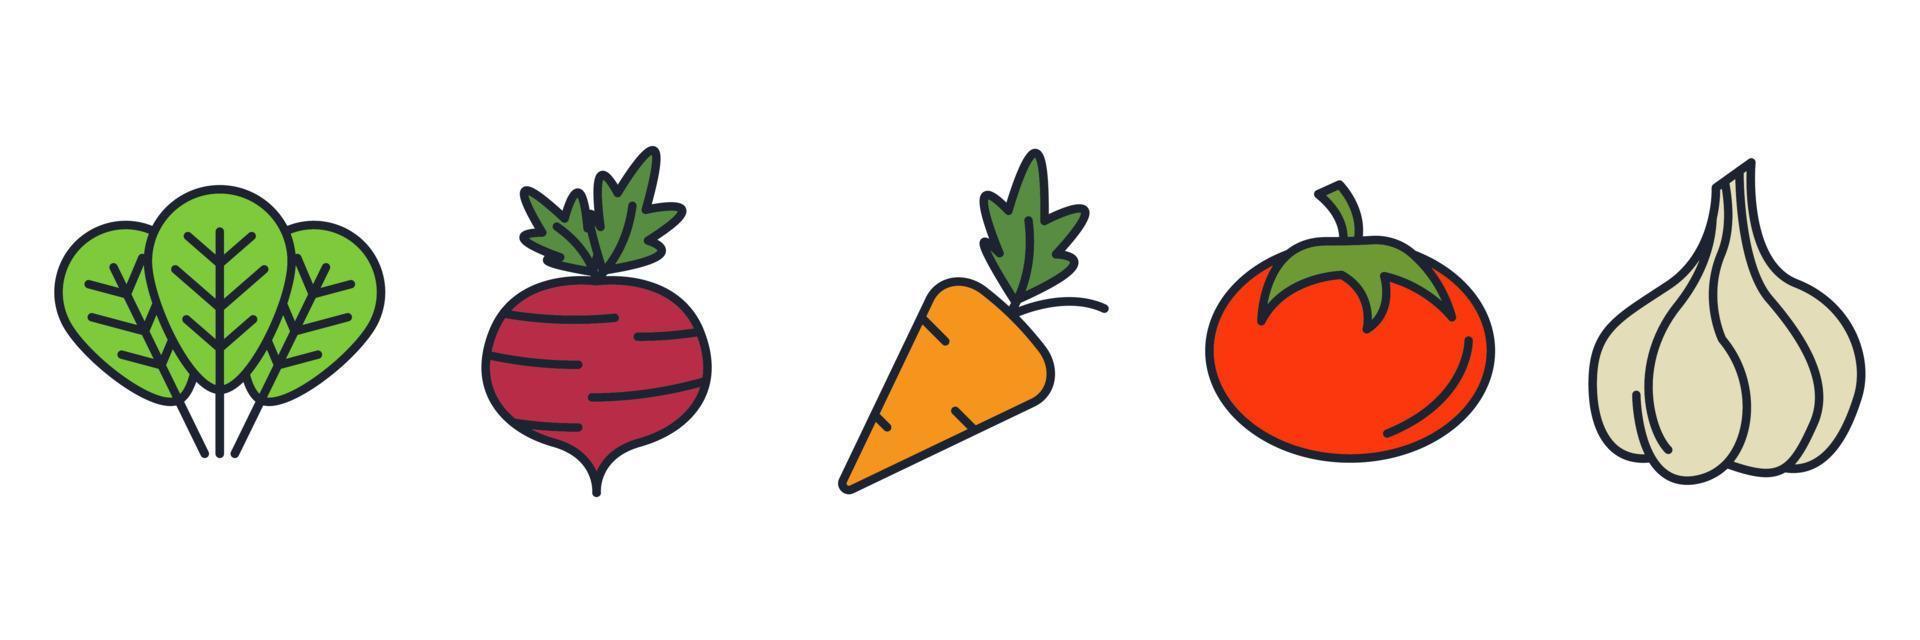 vegetarische, plantaardige elementen set pictogram symbool sjabloon voor grafische en webdesign collectie logo vectorillustratie vector